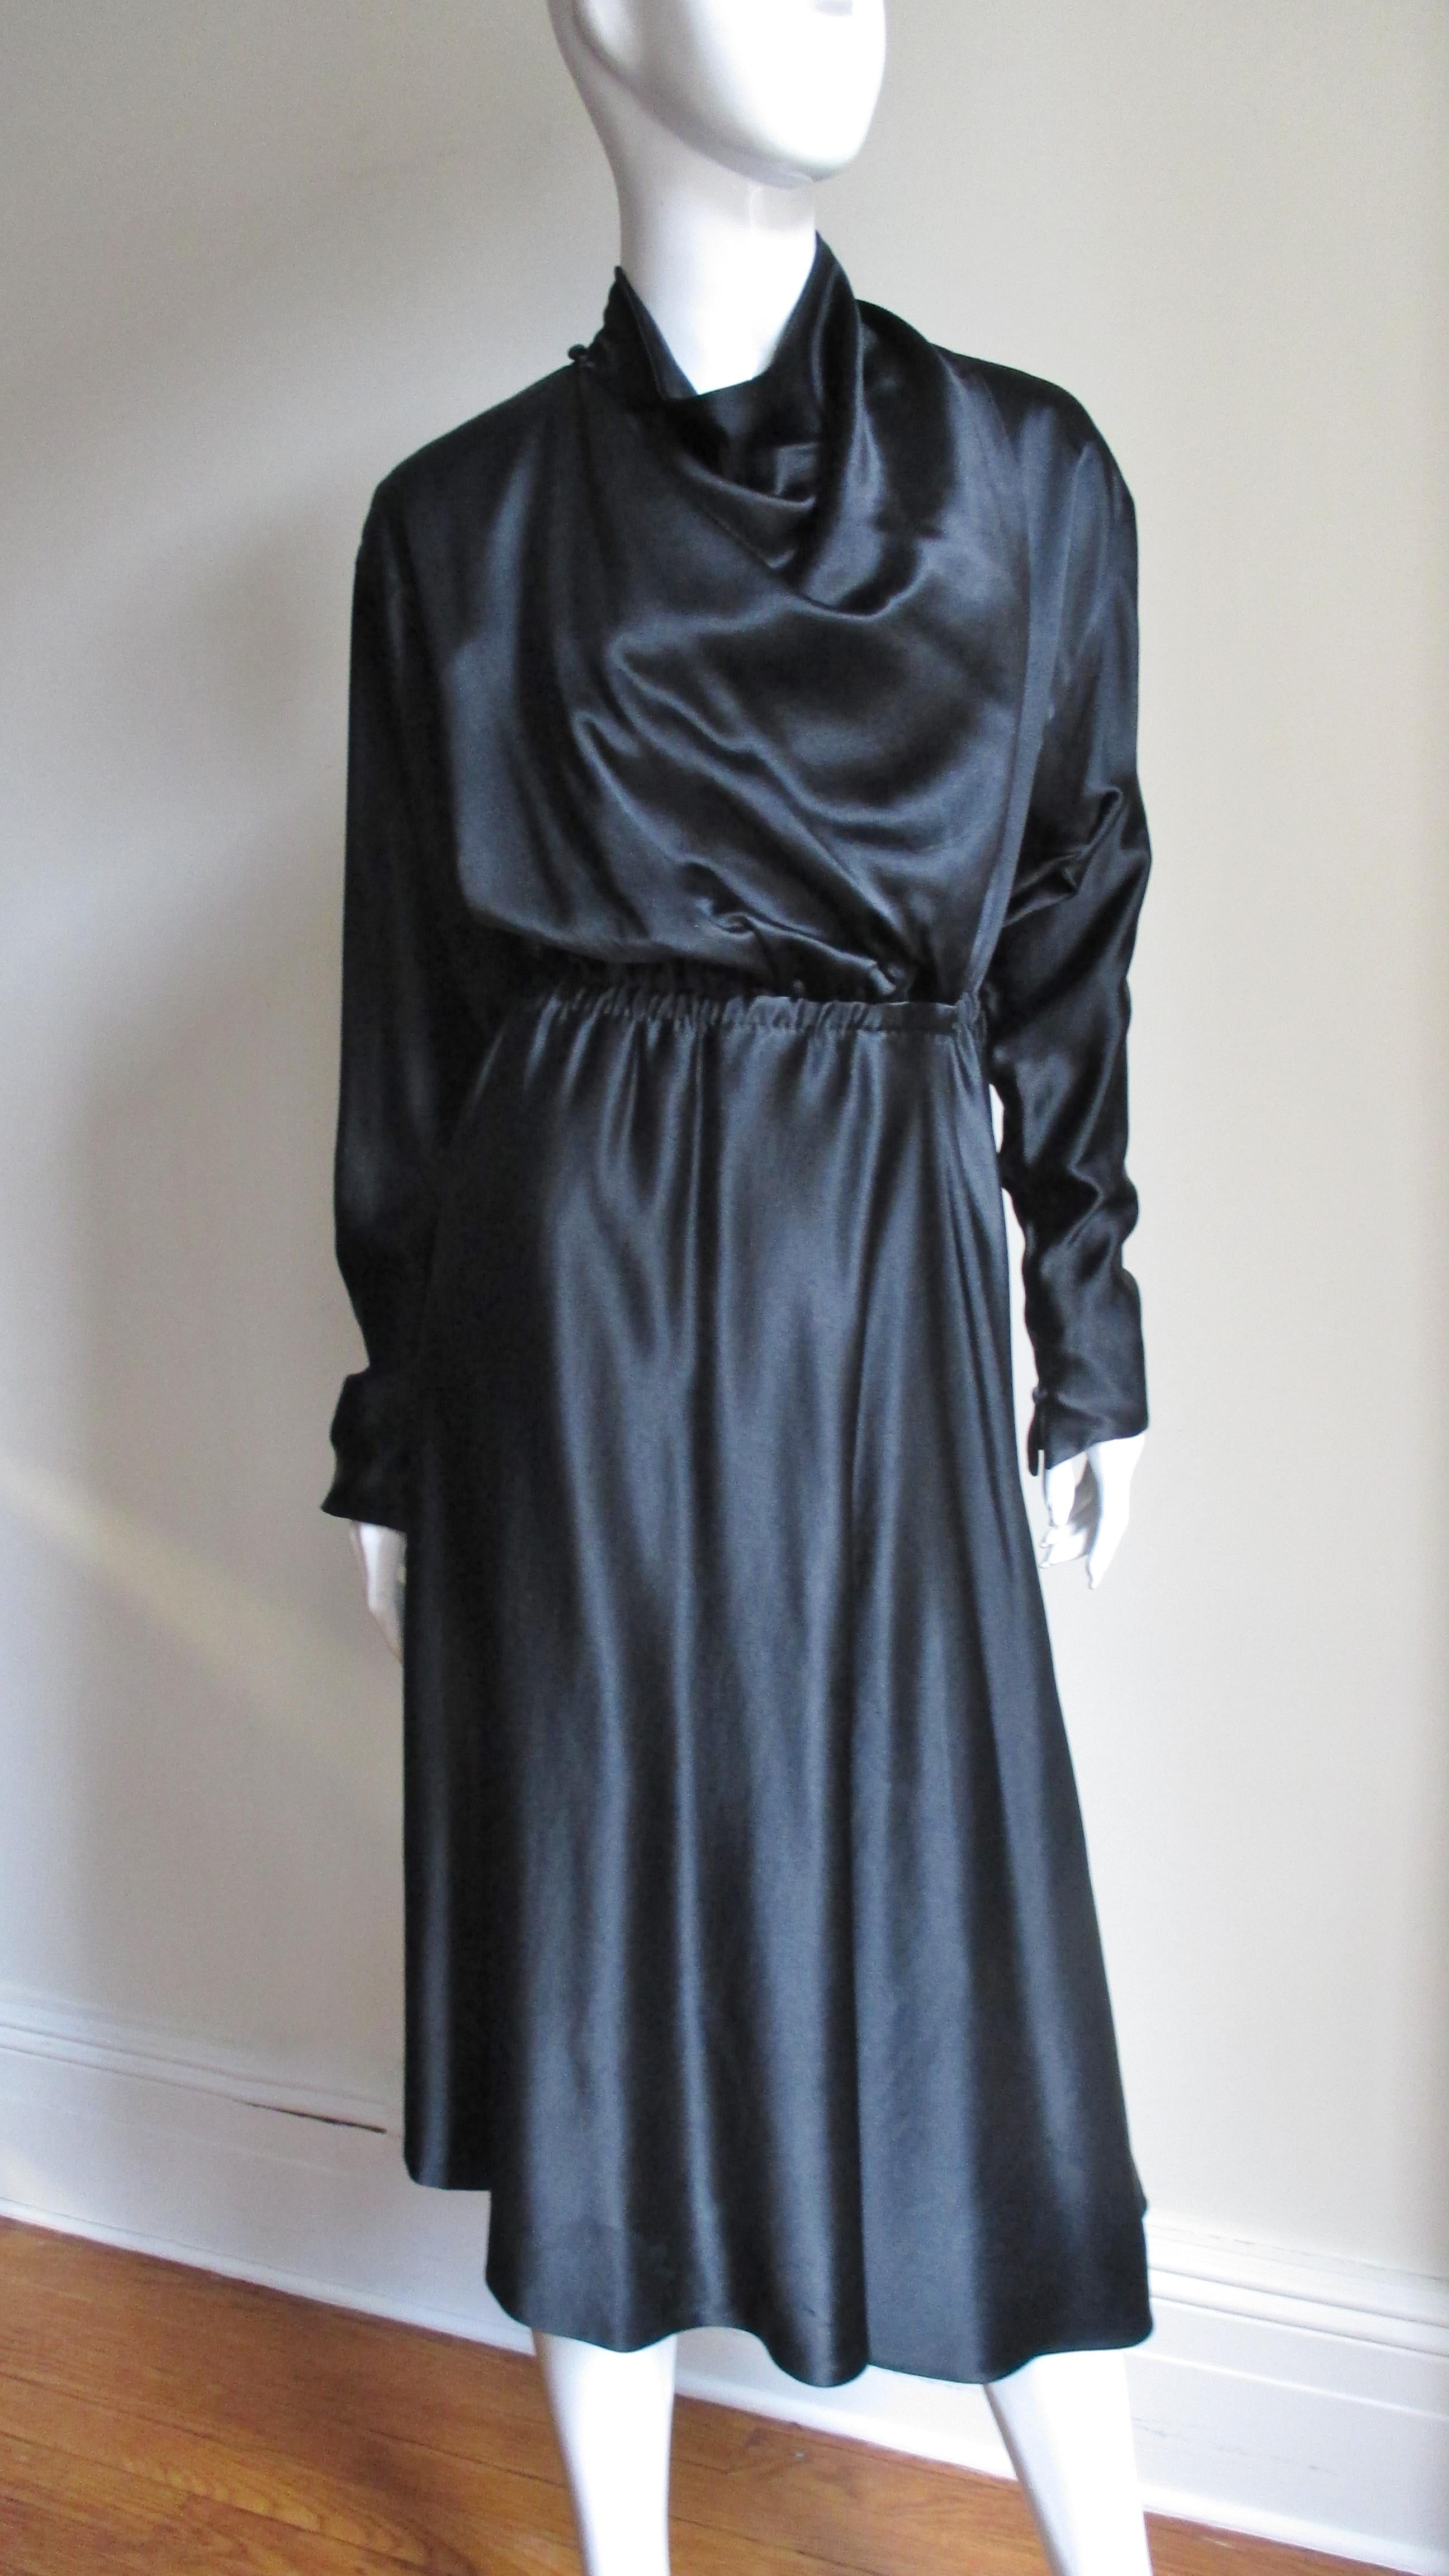 Ein wunderschönes, schwarzes Wickelkleid aus Seide von Halston.  Es hat eine Wickelvorderseite, einen drapierten Halsausschnitt und lange Dolman-Ärmel mit spitzen Manschetten, die mit einem kleinen, selbst bezogenen Knopf geschlossen werden.  Die